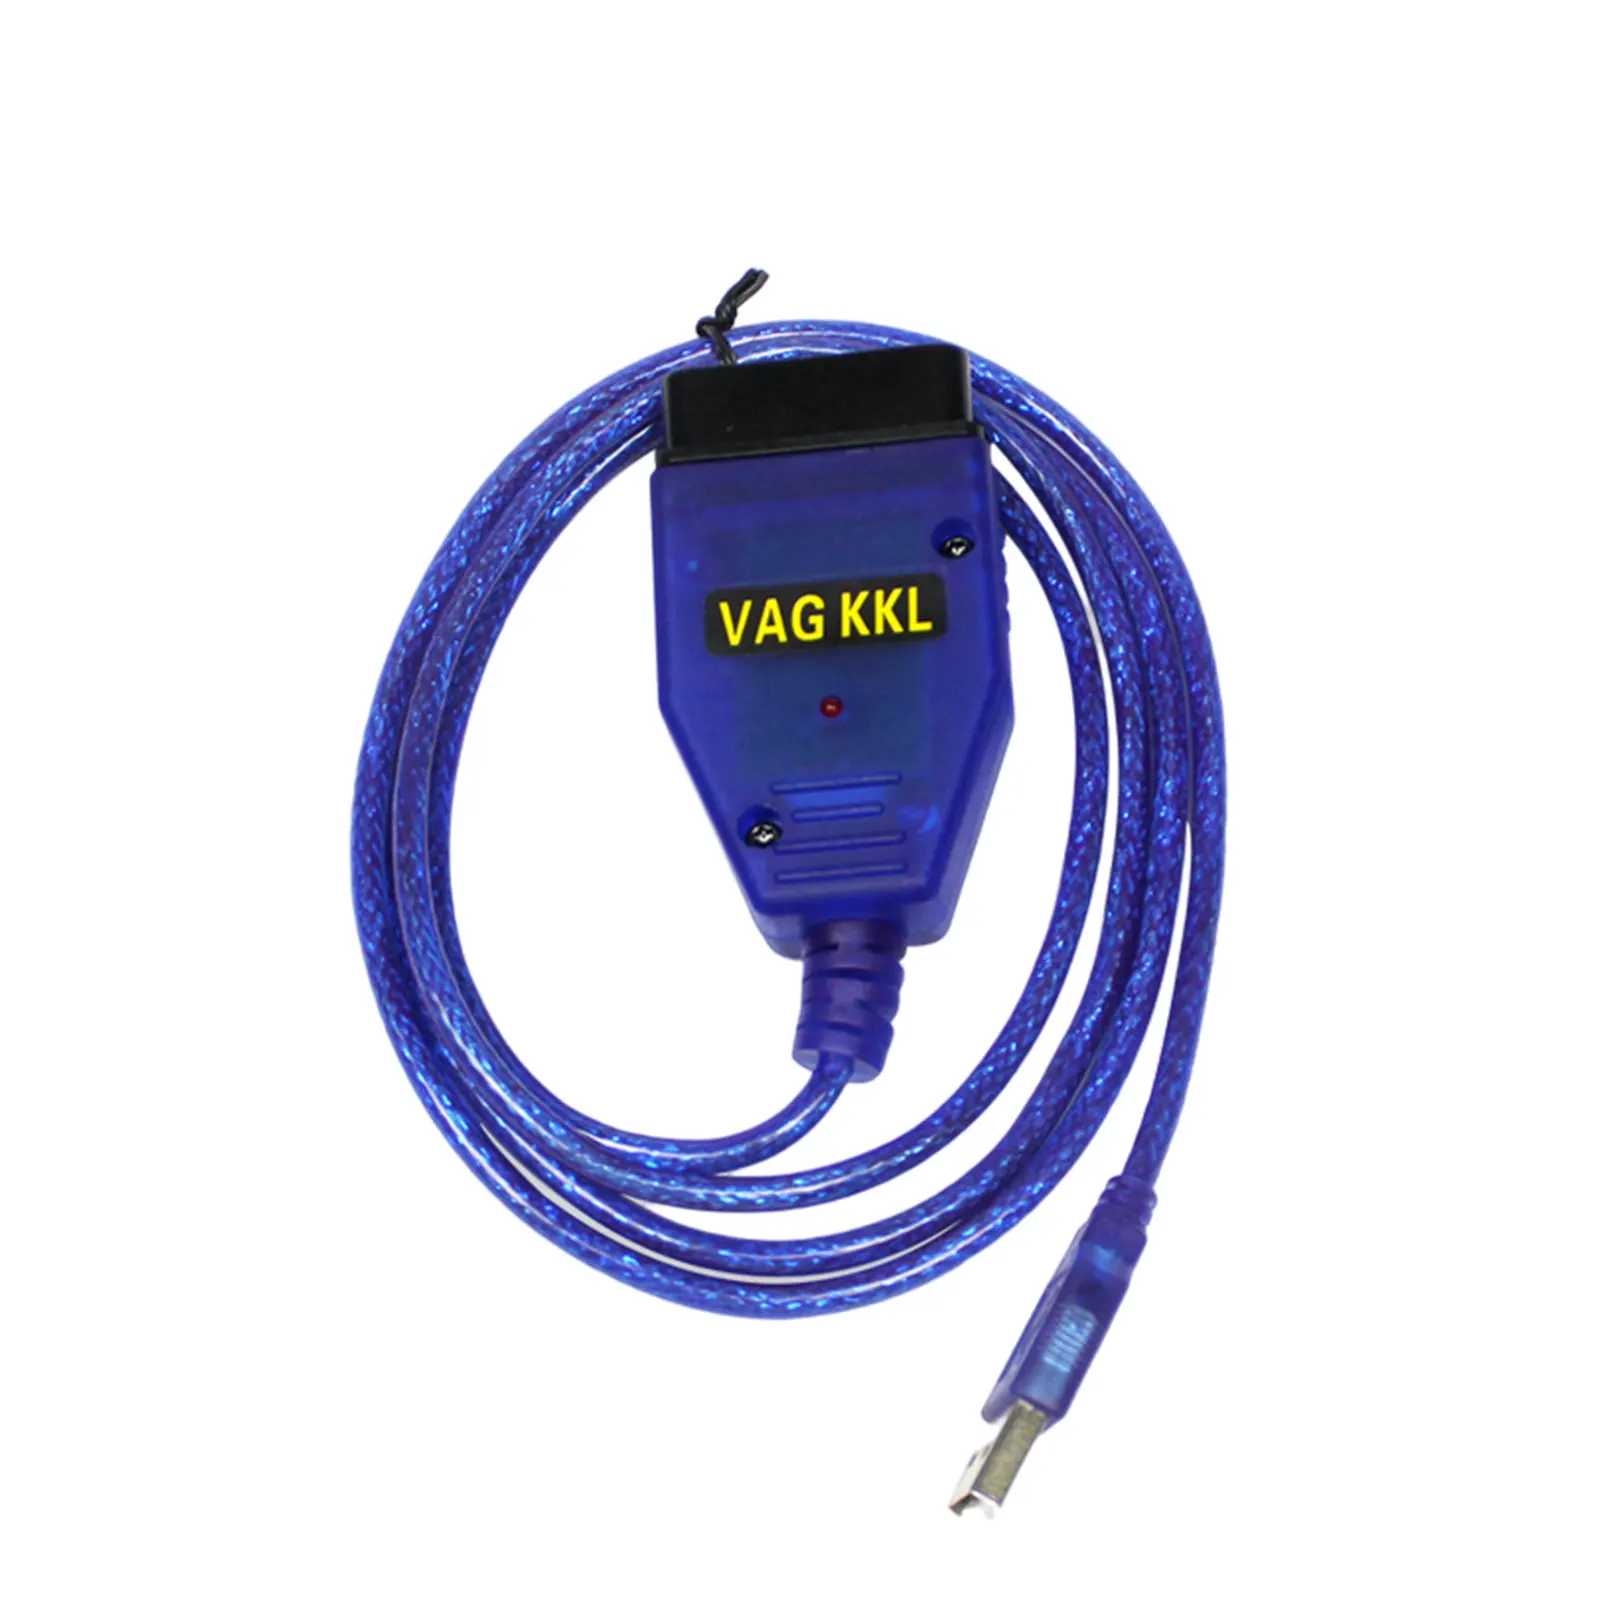 

ForAudi VW ForSEAT ForVolkswagen VagCom KKL VAG409.1 OBD2 USB Diagnostic Cable Scanner With CH340 Chip Car Scan Tool